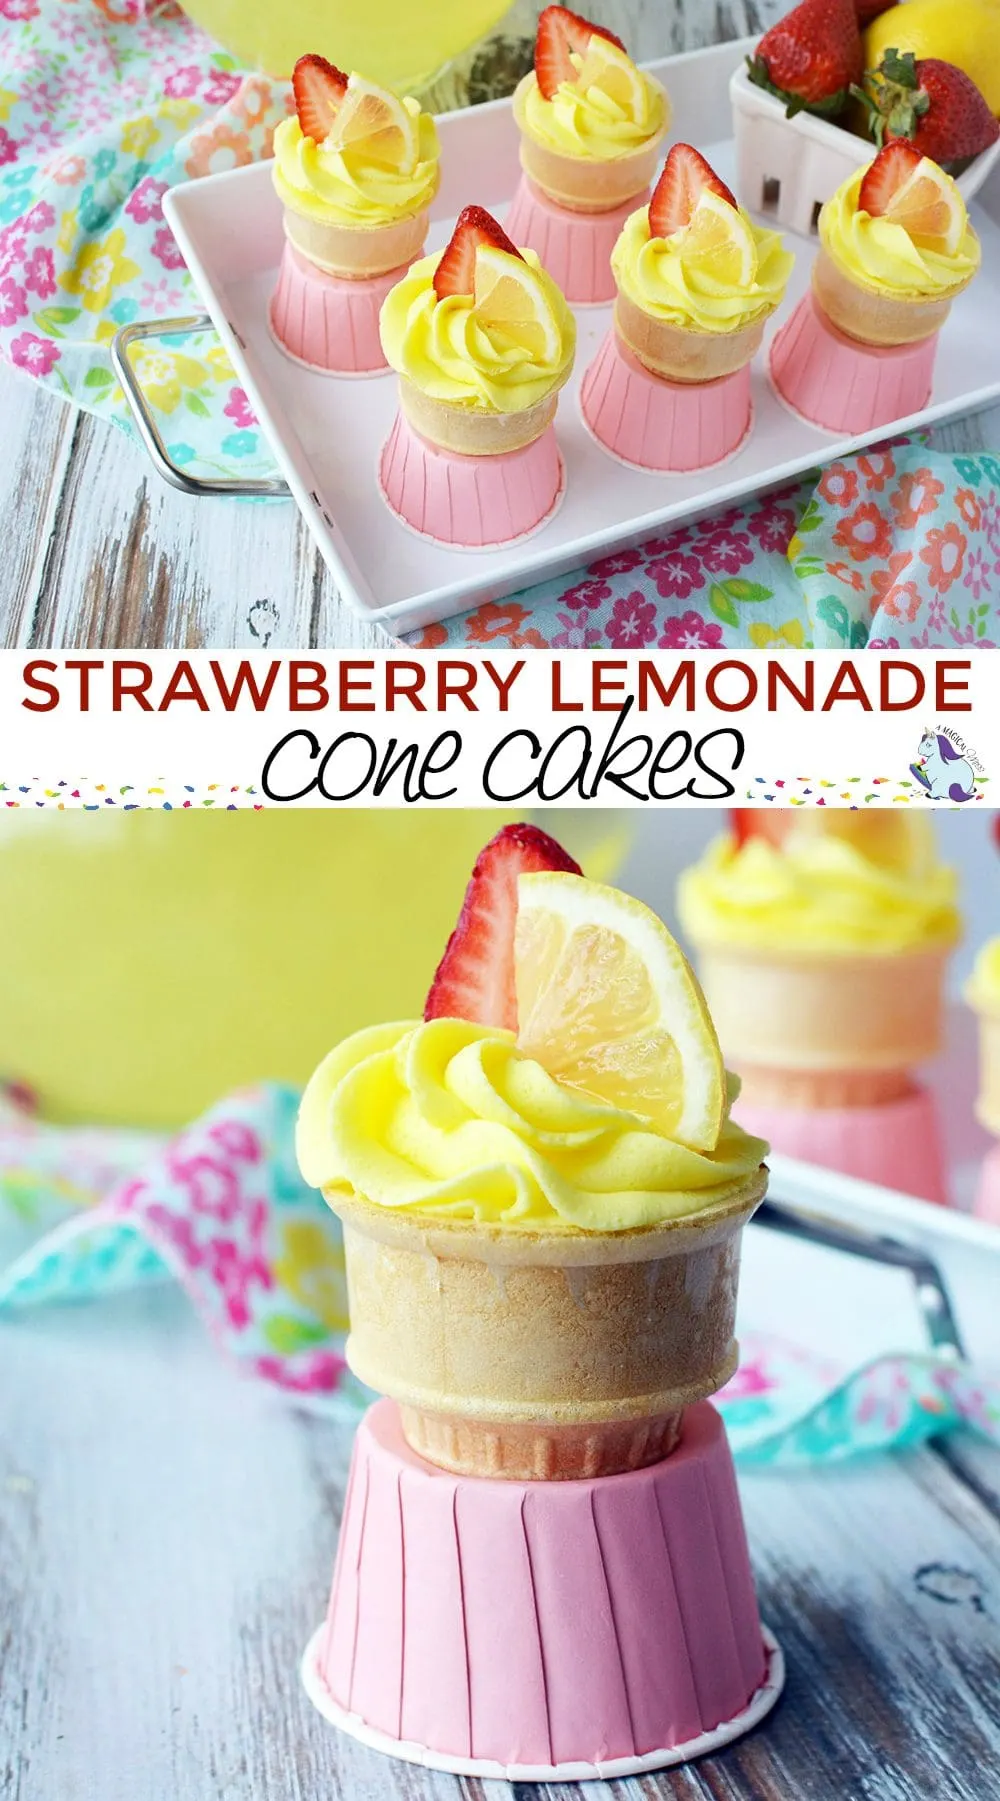 Strawberry Lemonade Cupcakes in a Cone Recipe